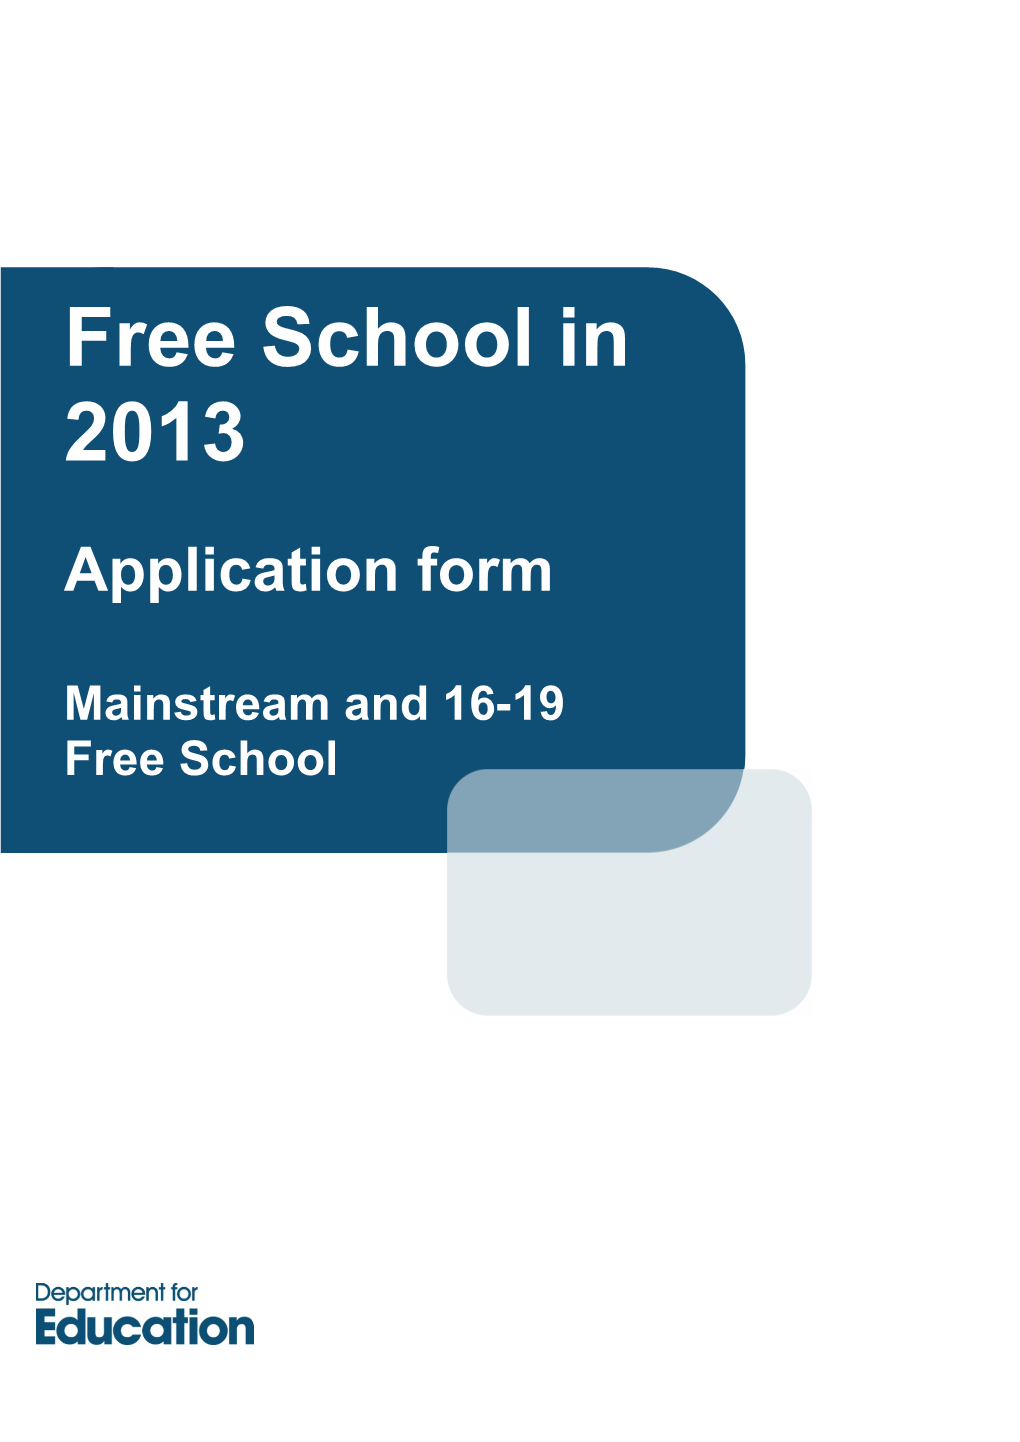 Free School in 2013